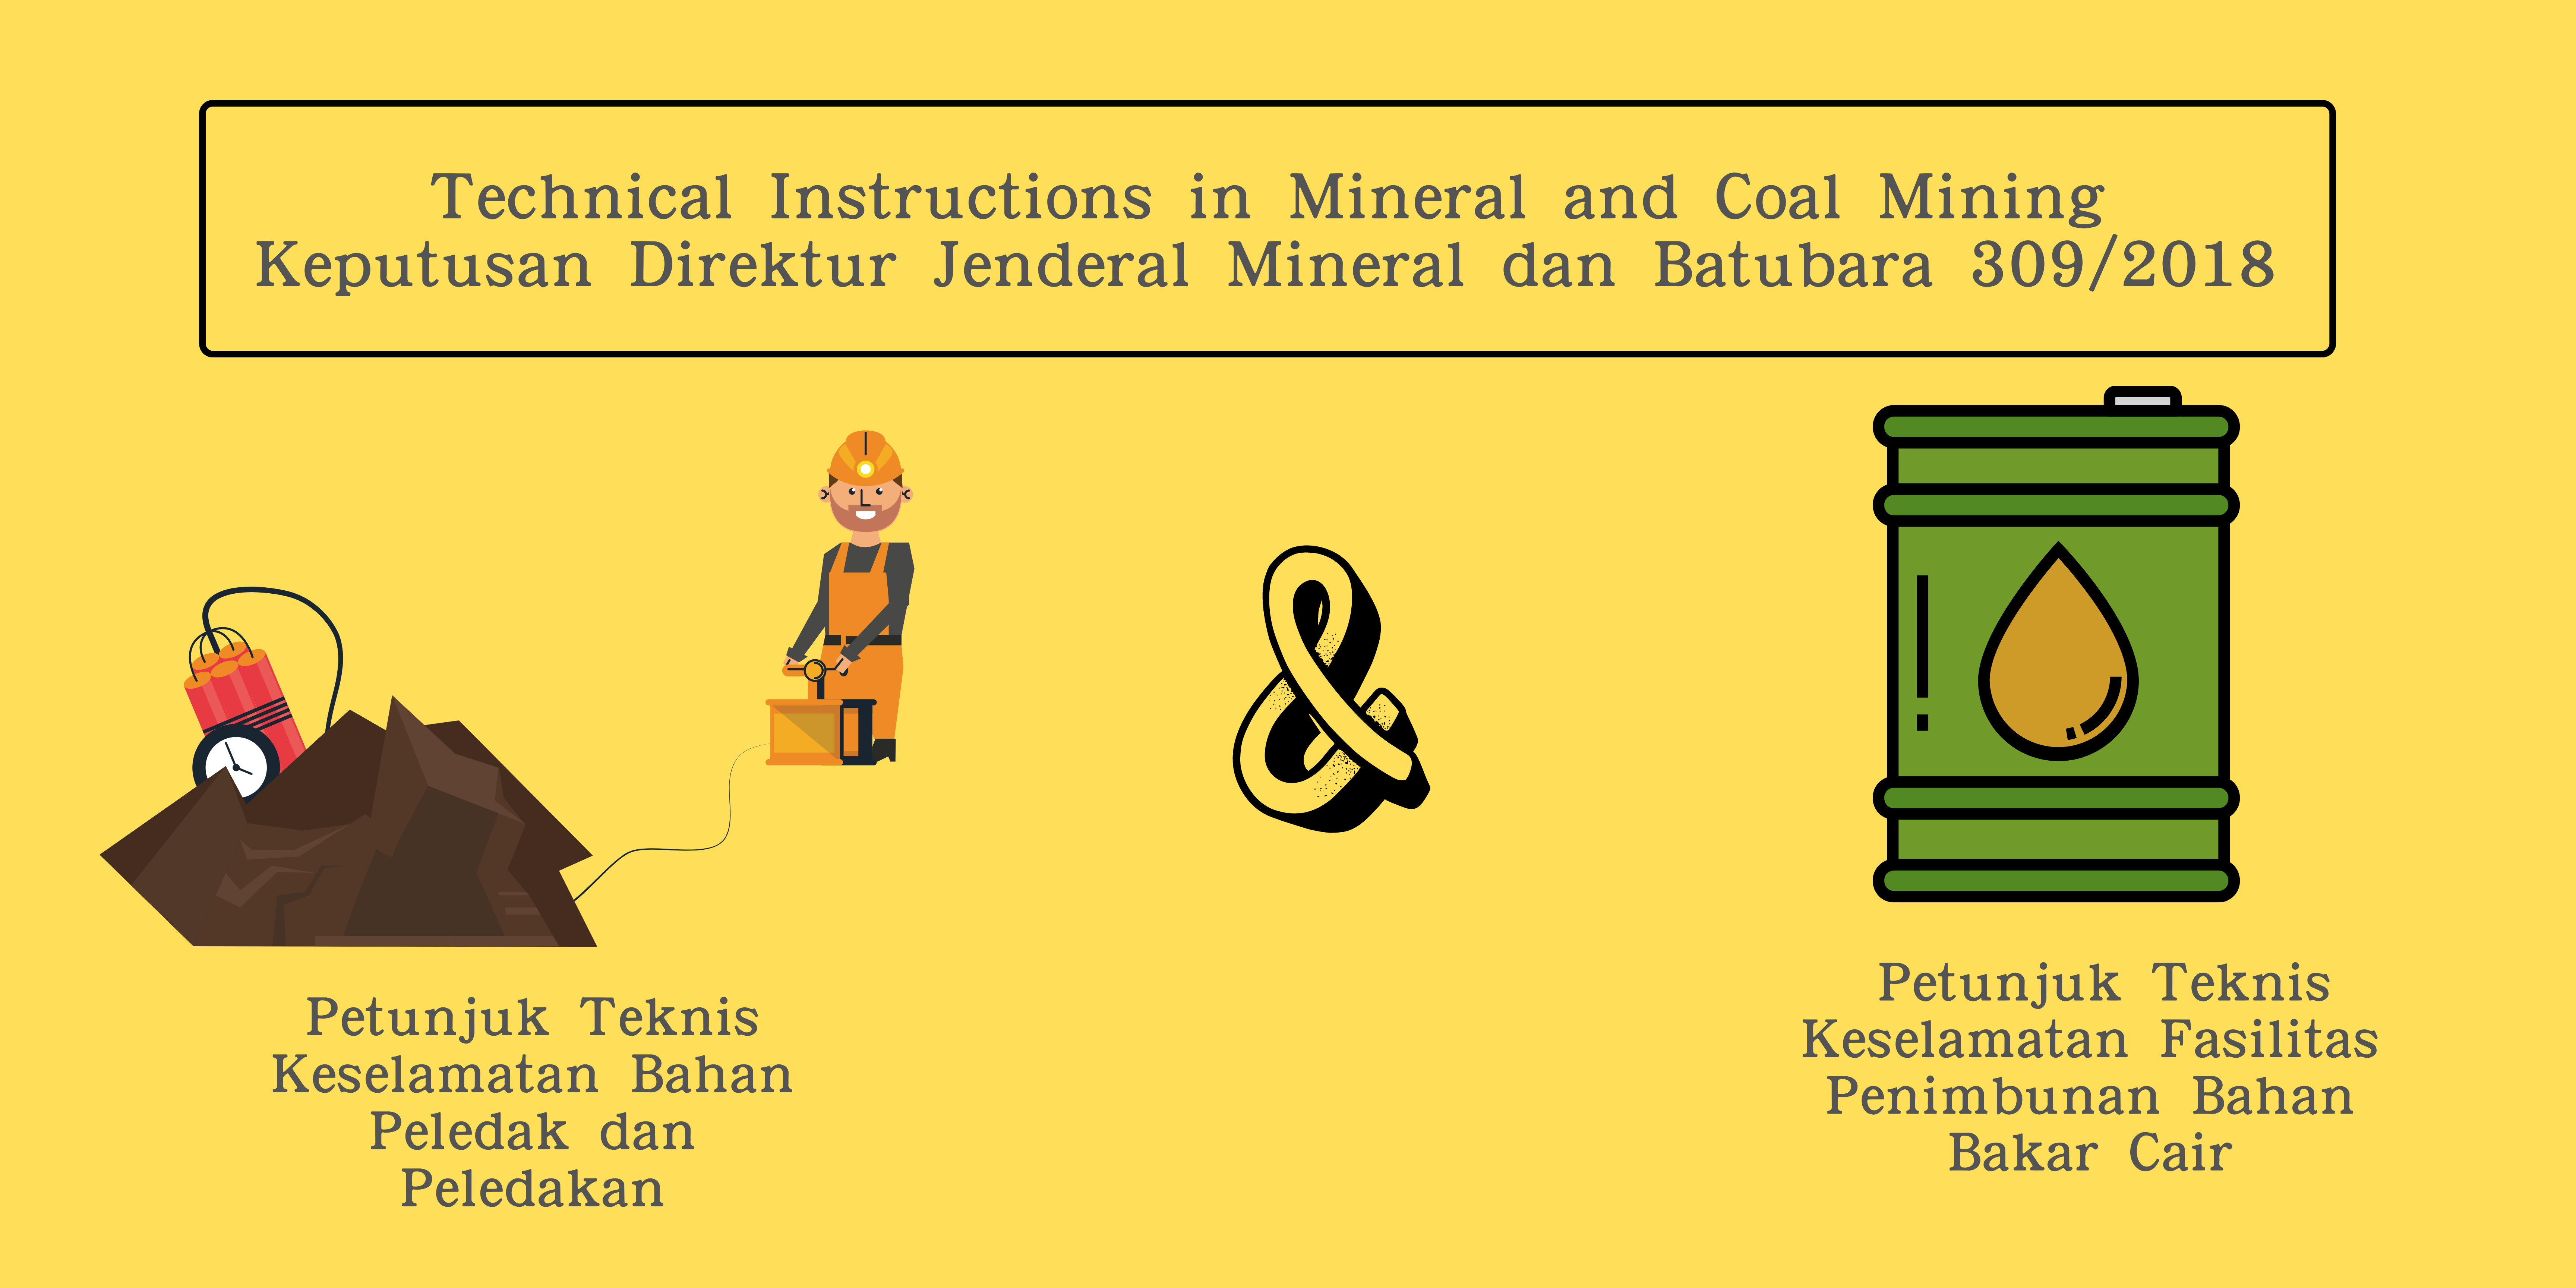 Petunjuk Teknis Keselamatan Bahan Peledak dan Peledakan serta Keselamatan Fasilitas Penimbunan Bahan Bakar Cair pada Kegiatan Usaha Pertambangan Mineral dan Batubara